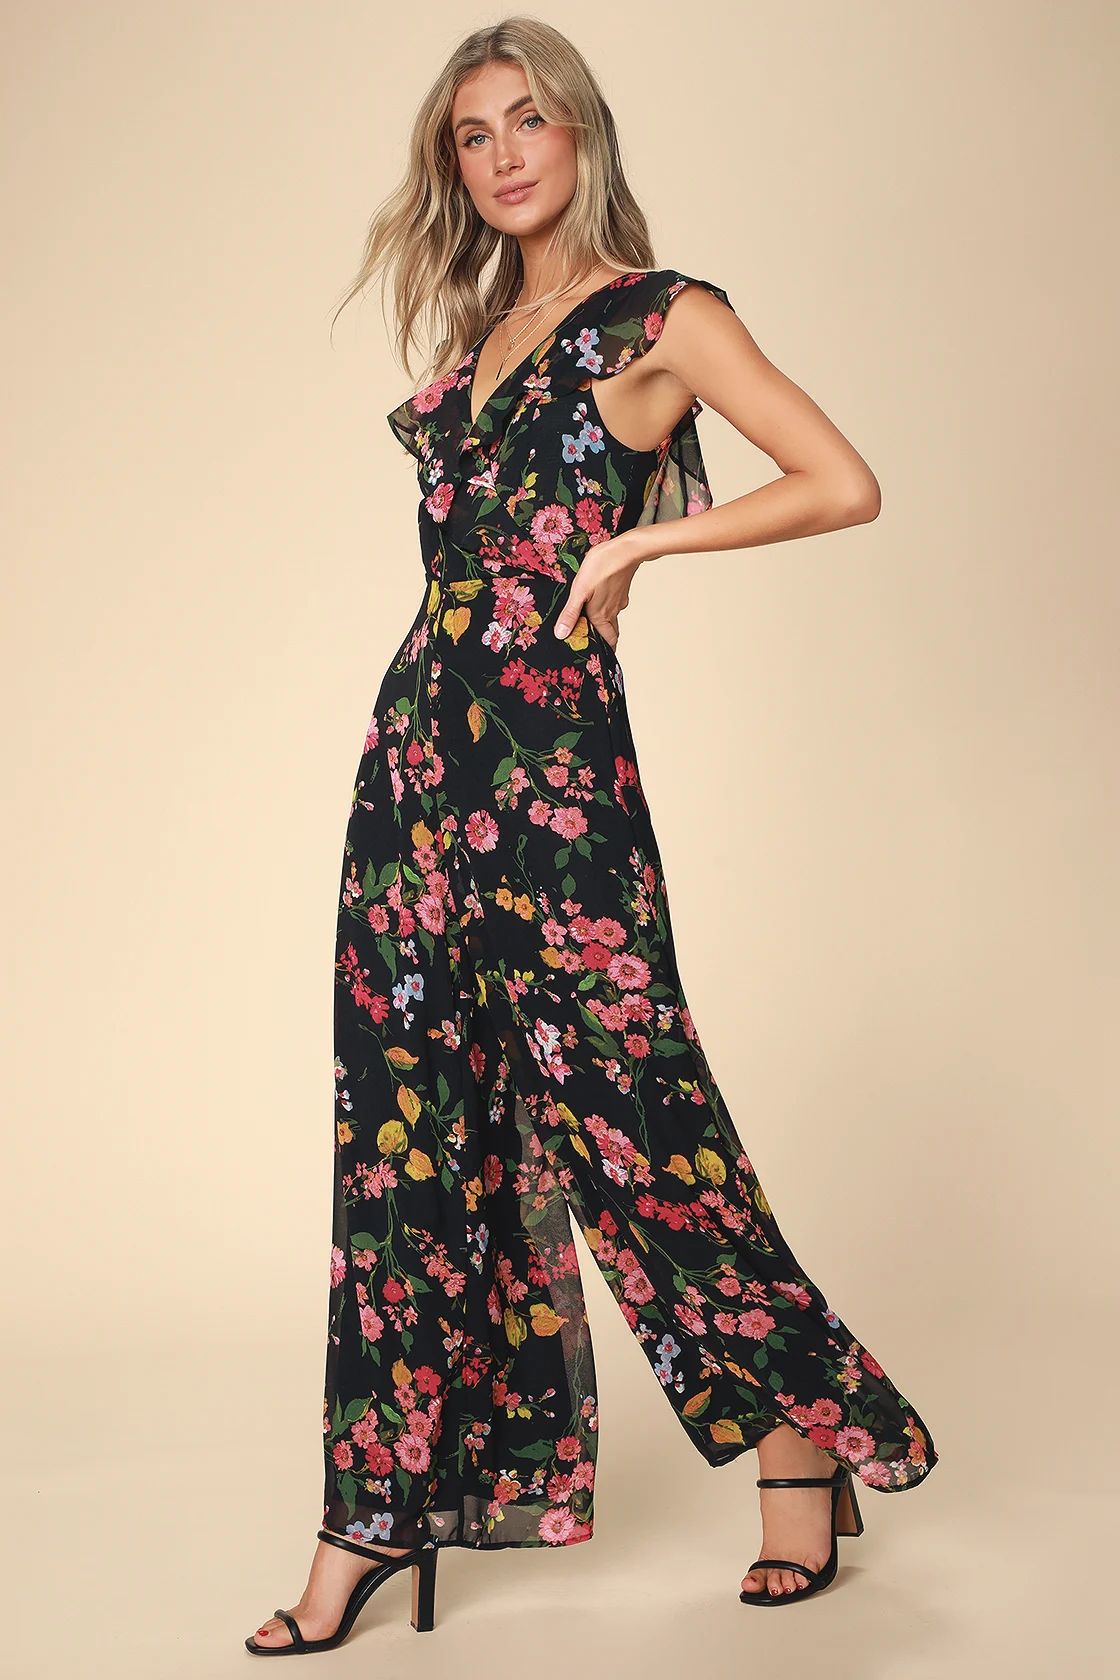 Blooming Love Black Floral Print Ruffled Jumpsuit | Lulus